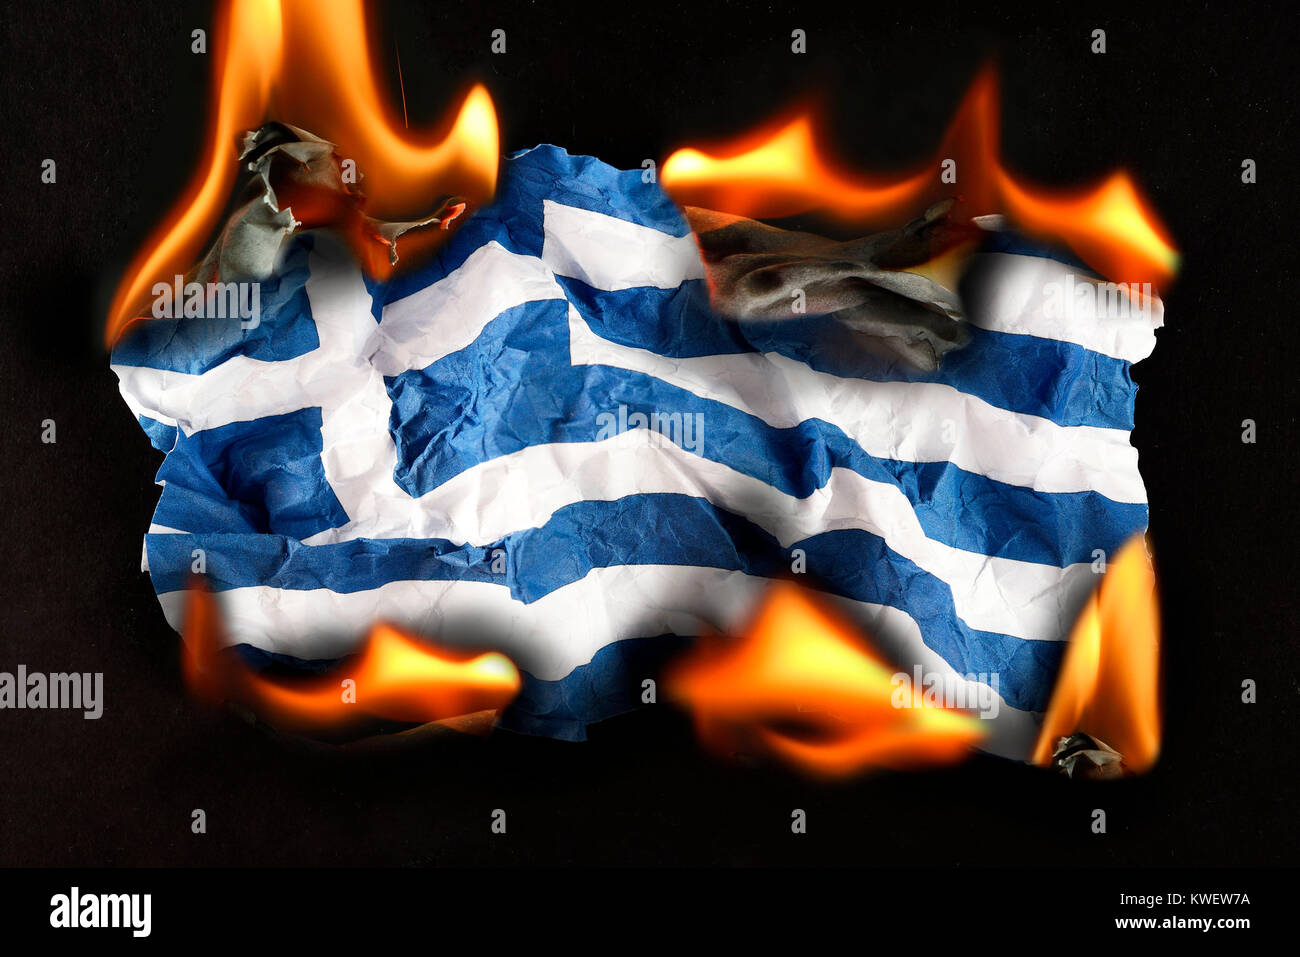 Drapeau de la Grèce en flammes, symbolique de la dette, Griechenlandfahne photo querelle dans Symbolfoto Schuldenstreit Flammen, Banque D'Images